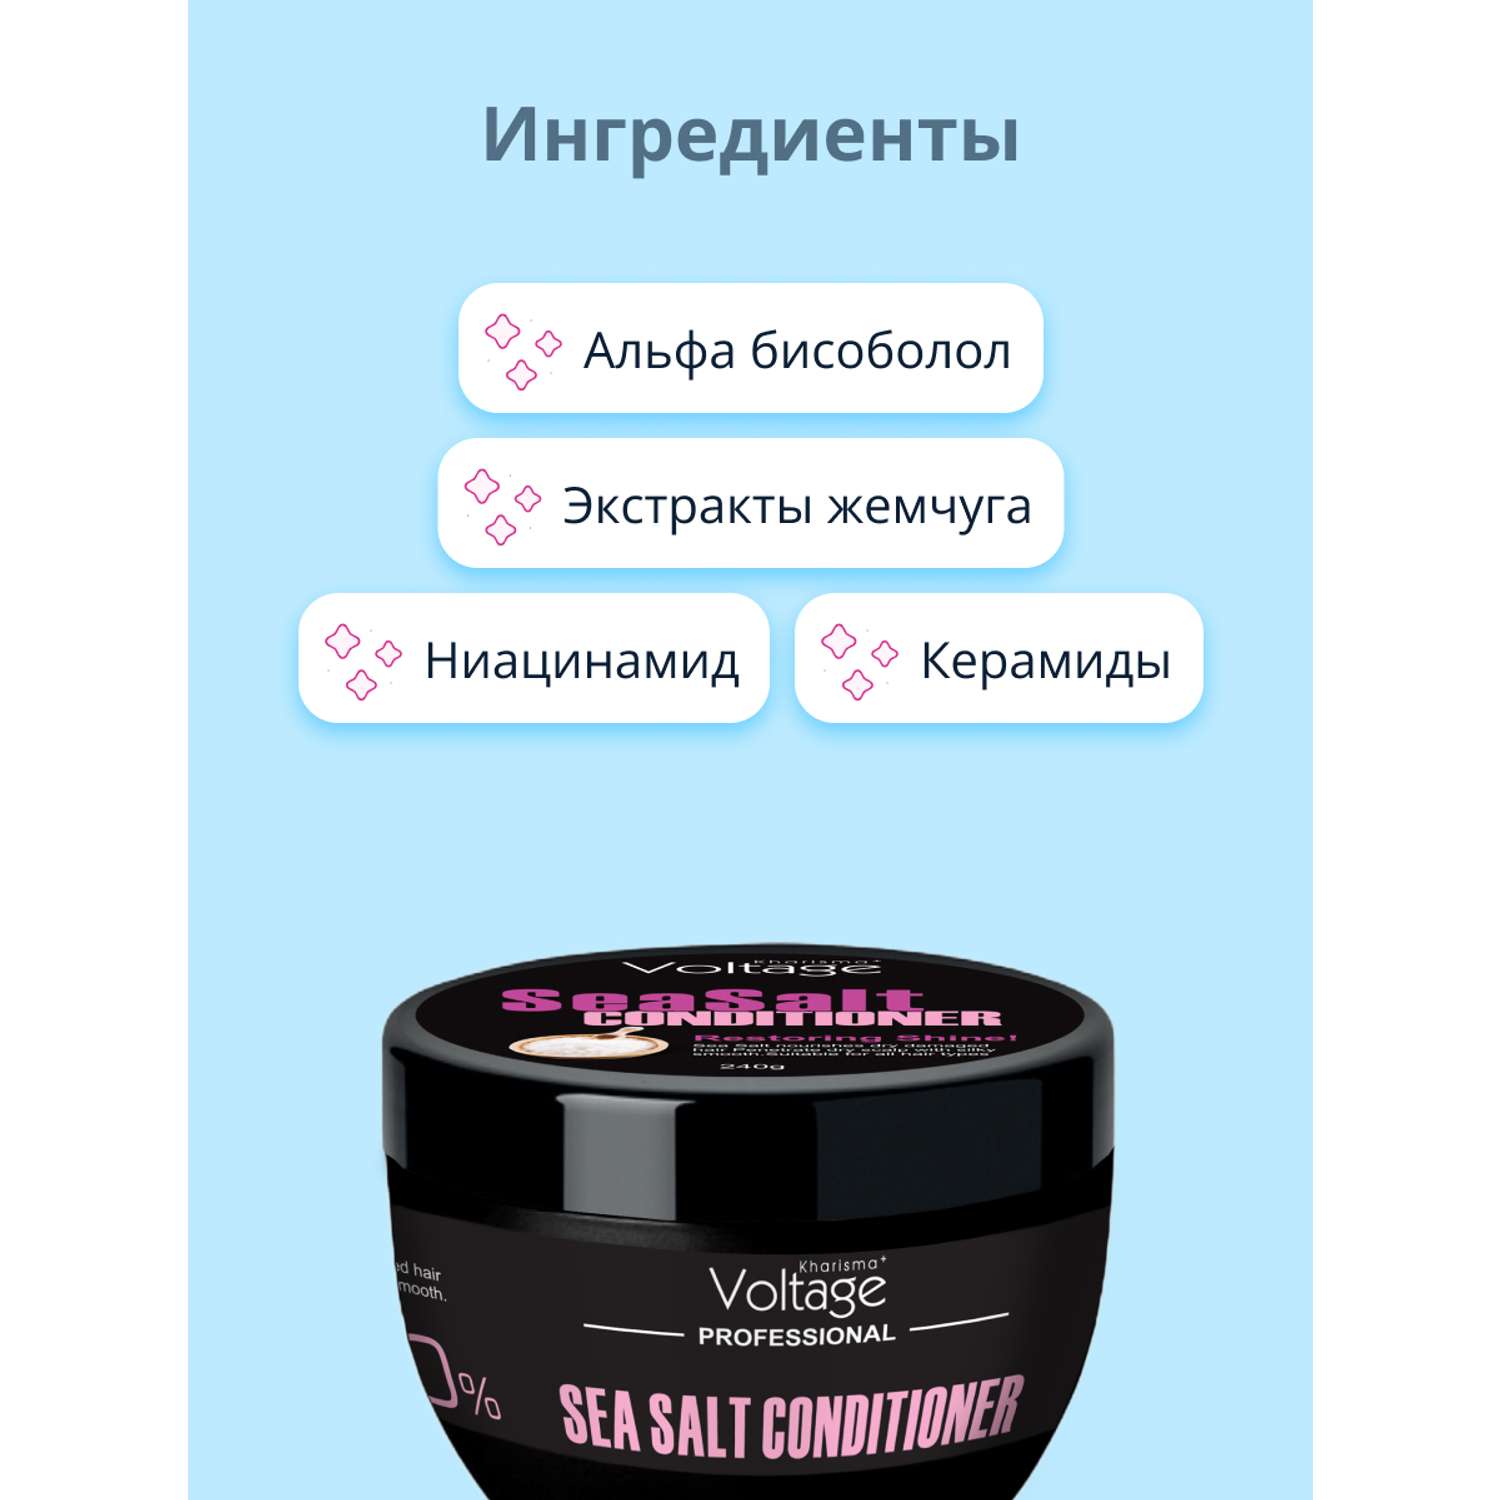 Кондиционер для волос Kharisma Voltage Professional sea salt 240 г - фото 2